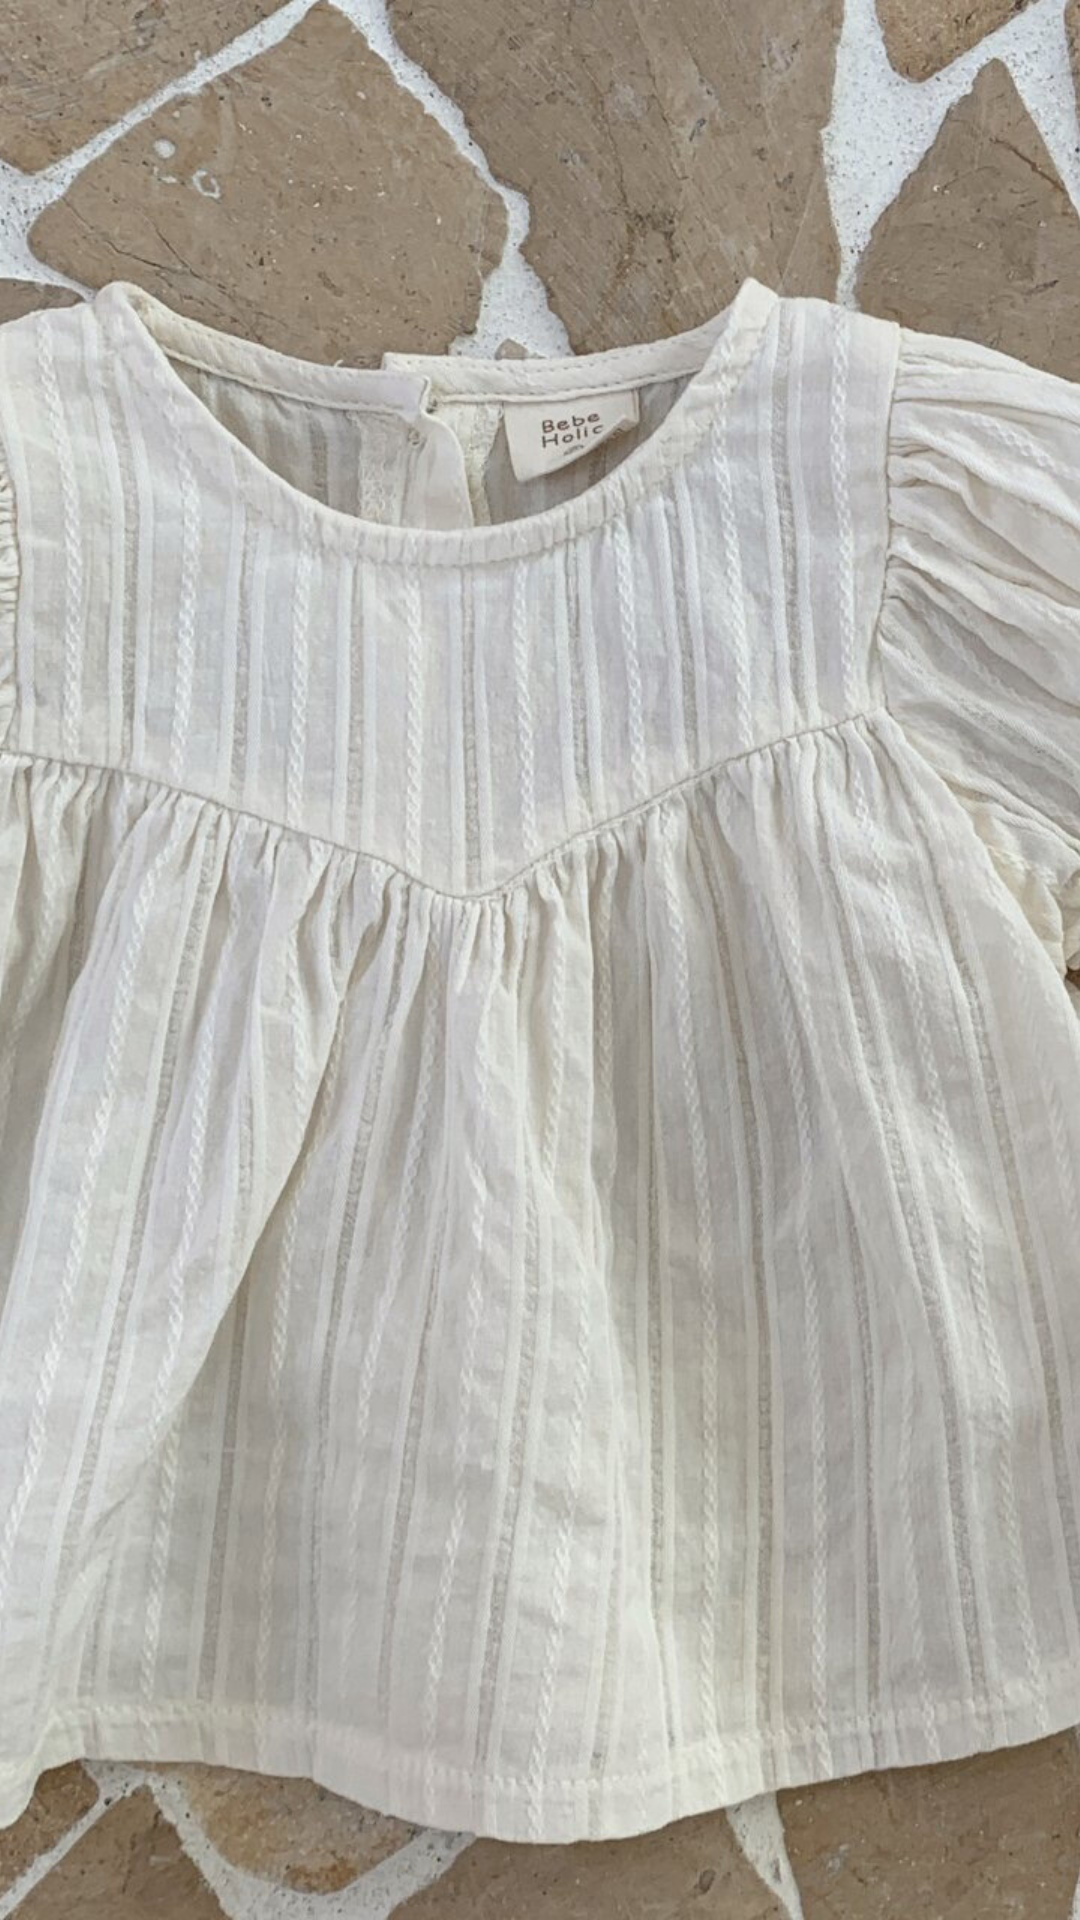 Eine Nahaufnahme einer weißen, strukturierten Raoul-Bluse von Bebe Holic mit Rüschendetails und kurzen Ärmeln, präsentiert auf einer gemusterten Oberfläche.